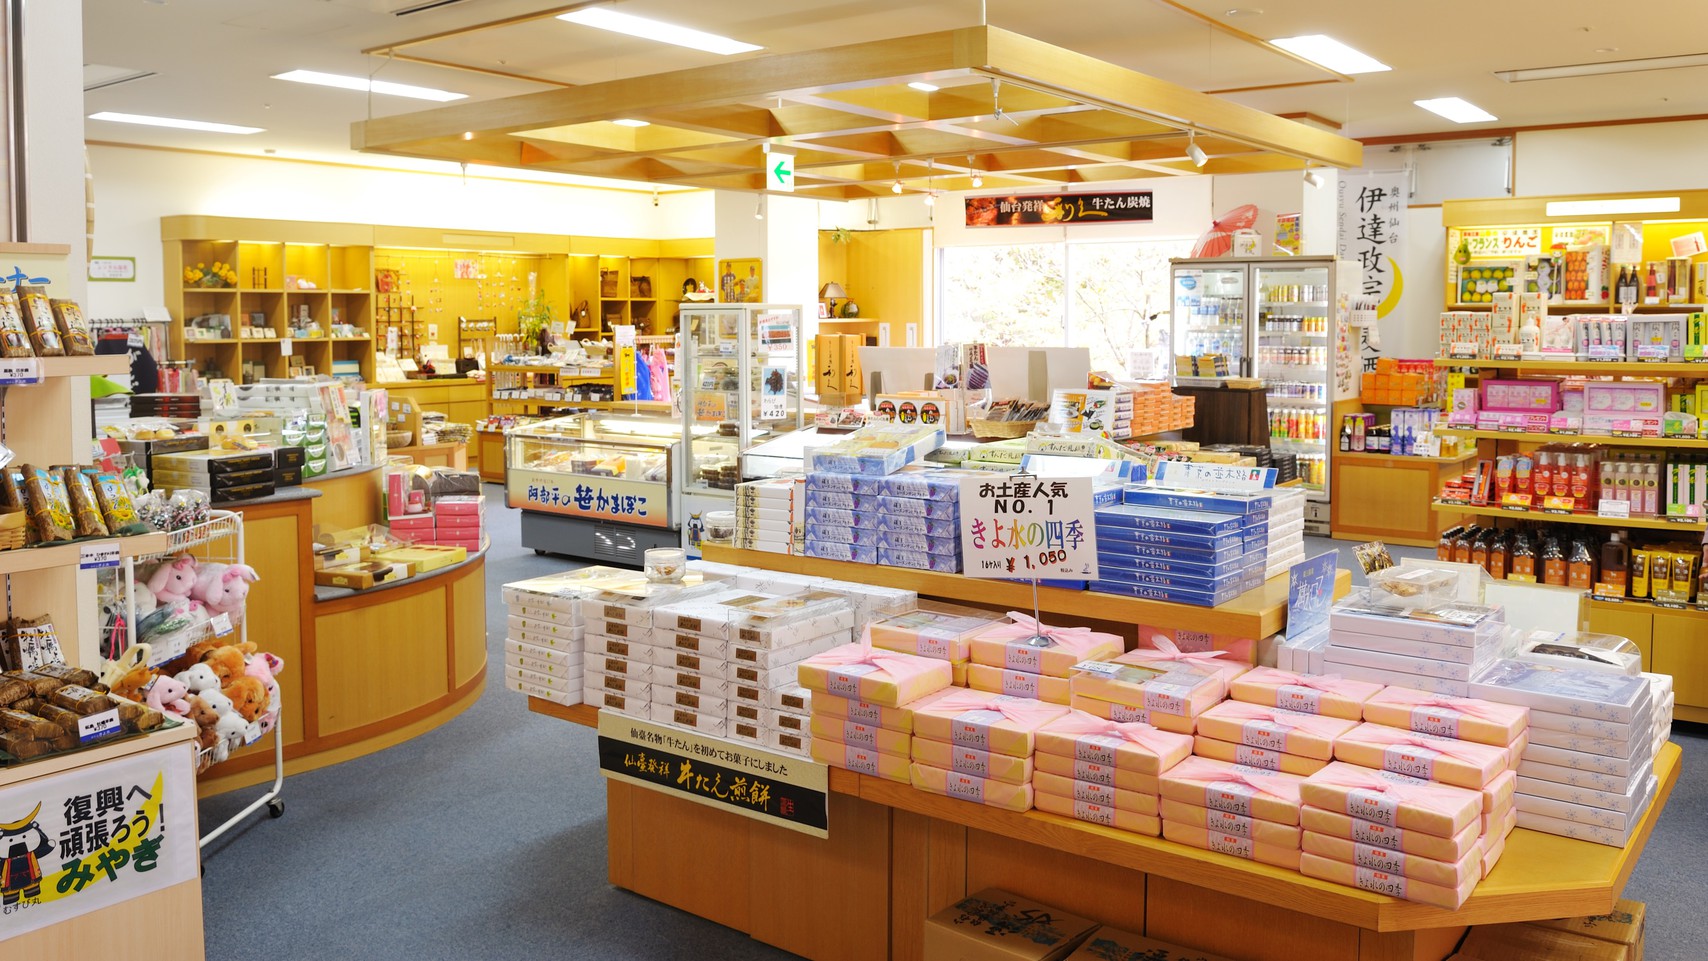 売店『東北名店街』…;仙台や東北のお土産を中心に、きよ水限定のお土産まで各種取り揃えております。